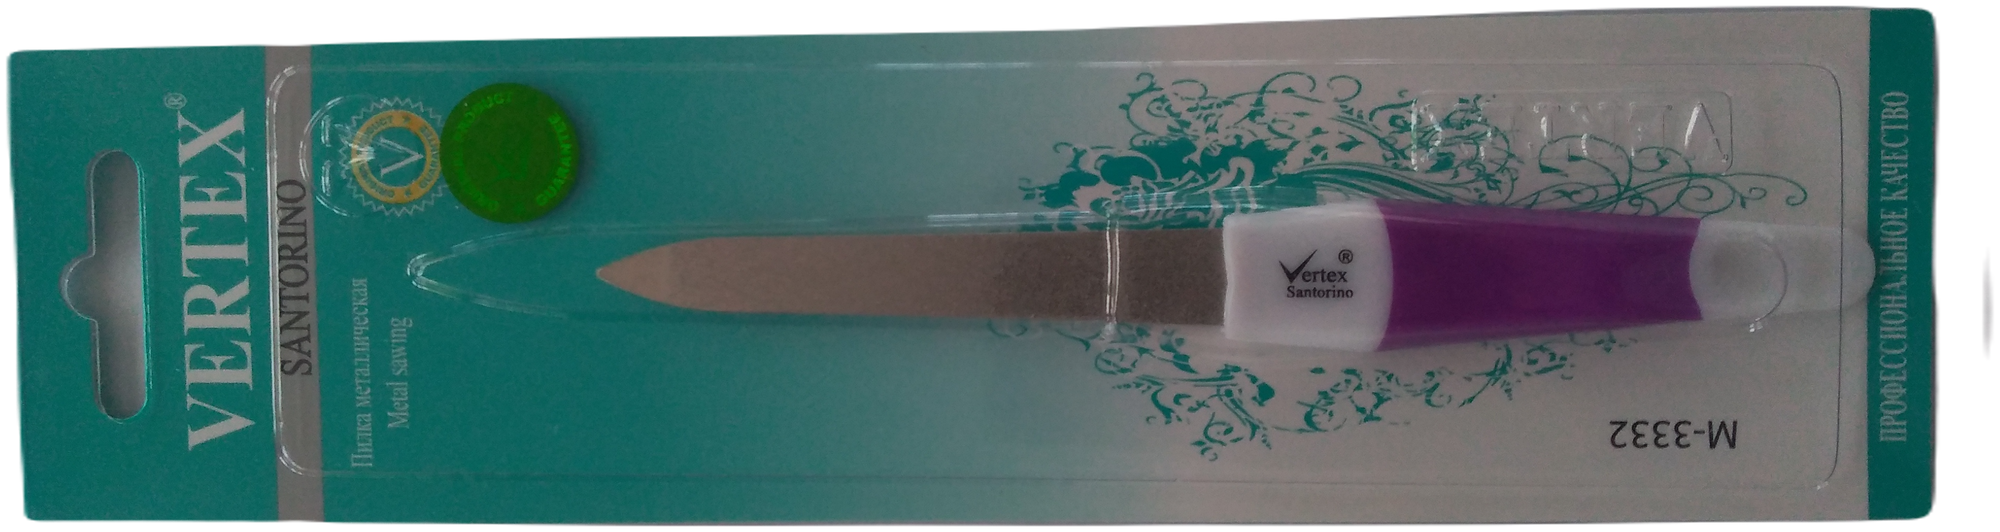 Профессиональная универсальная металлическая пилка Vertex Santorino для маникюра и педикюра с лазерными насечками